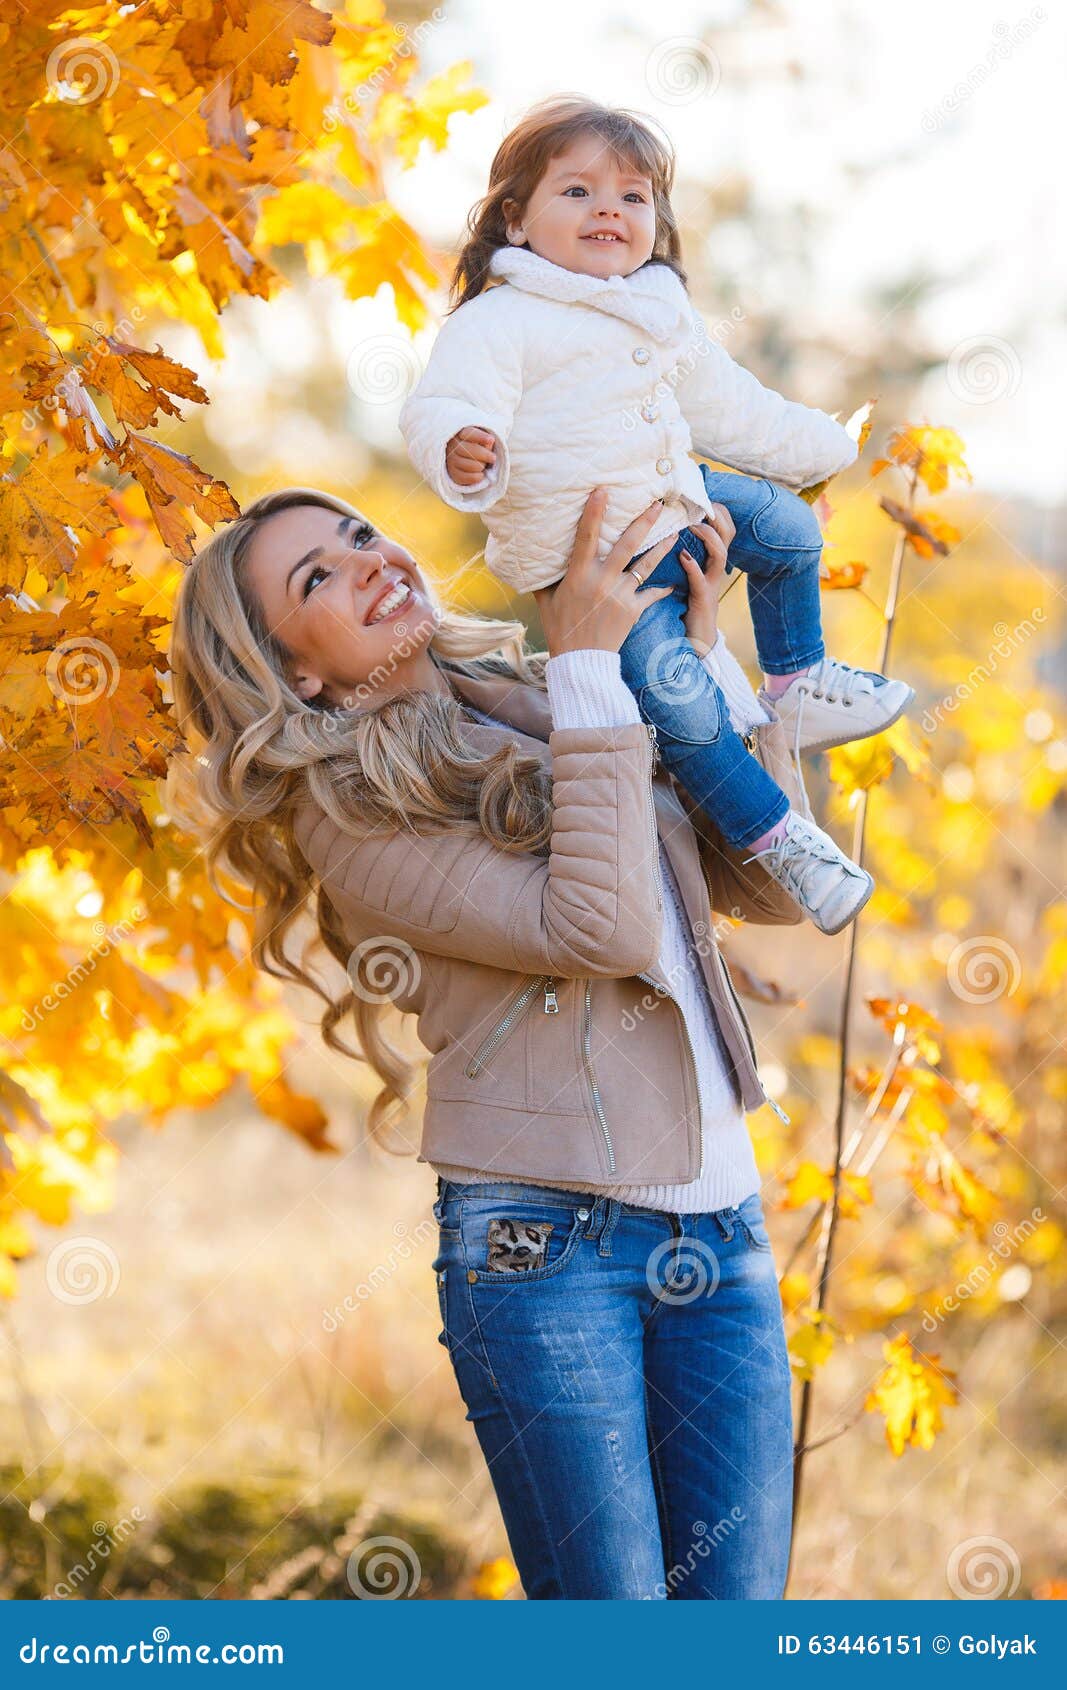 Парка буду мамой. Осенняя фотосессия с дочкой. Осенняя фотосессия с дочкой в парке. Осенняя фотосессия мама с дочкой. Фотосессия мама и дочка осенью.